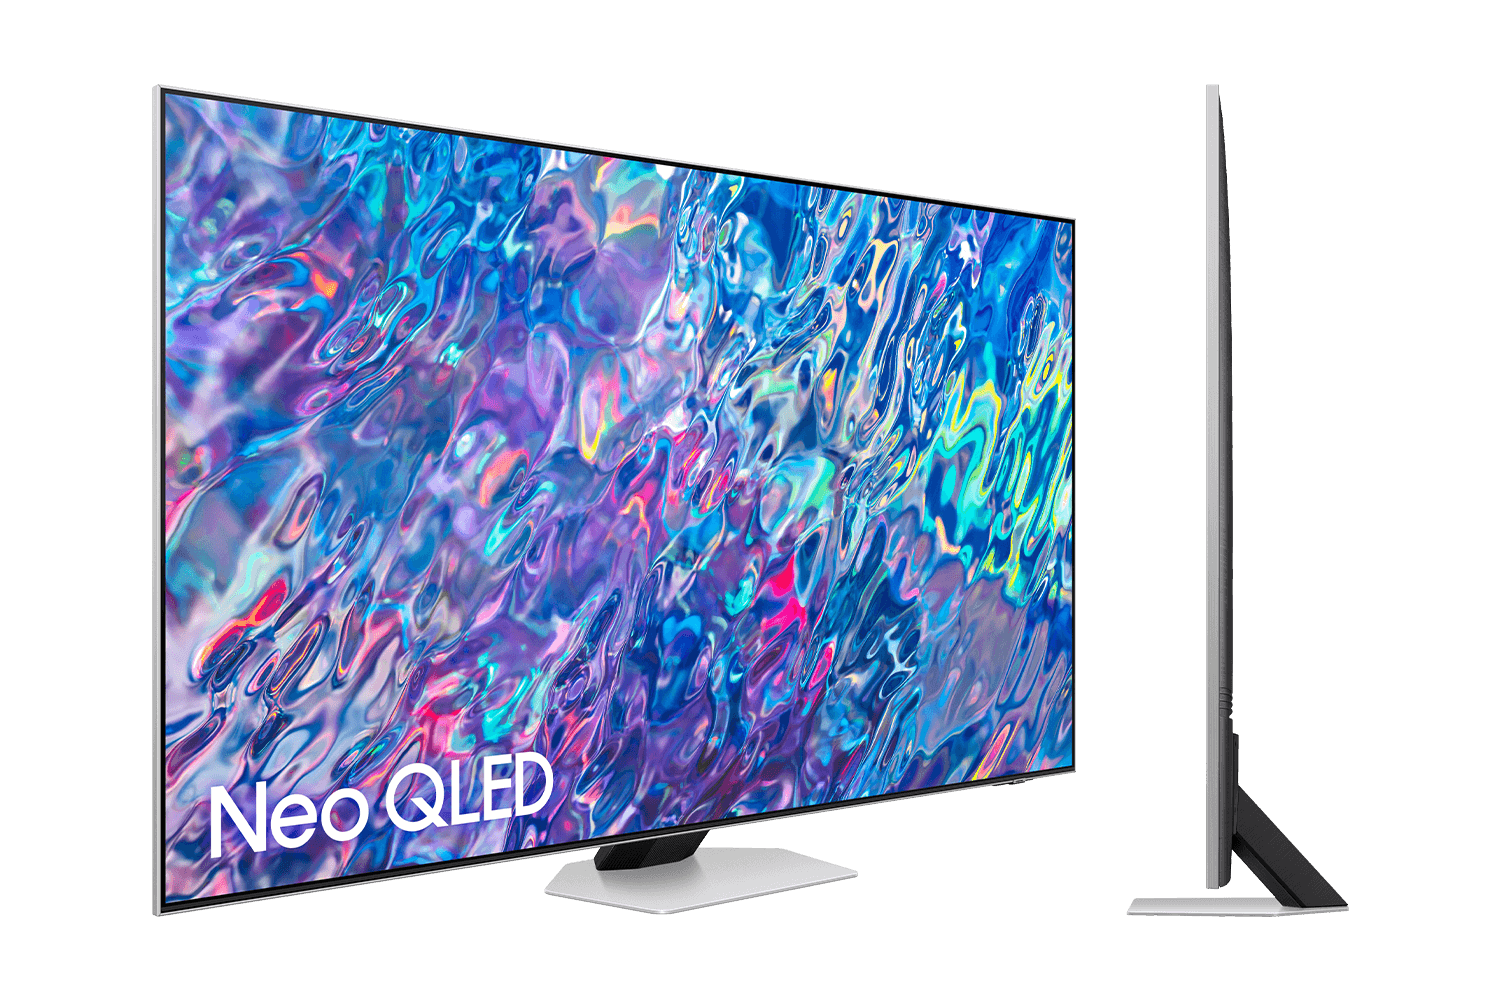 El Corte Inglés deja a su precio más bajo esta smart TV Samsung 4K de 65  pulgadas con Dolby Atmos, 120 Hz de refresco y HDMI 2.1